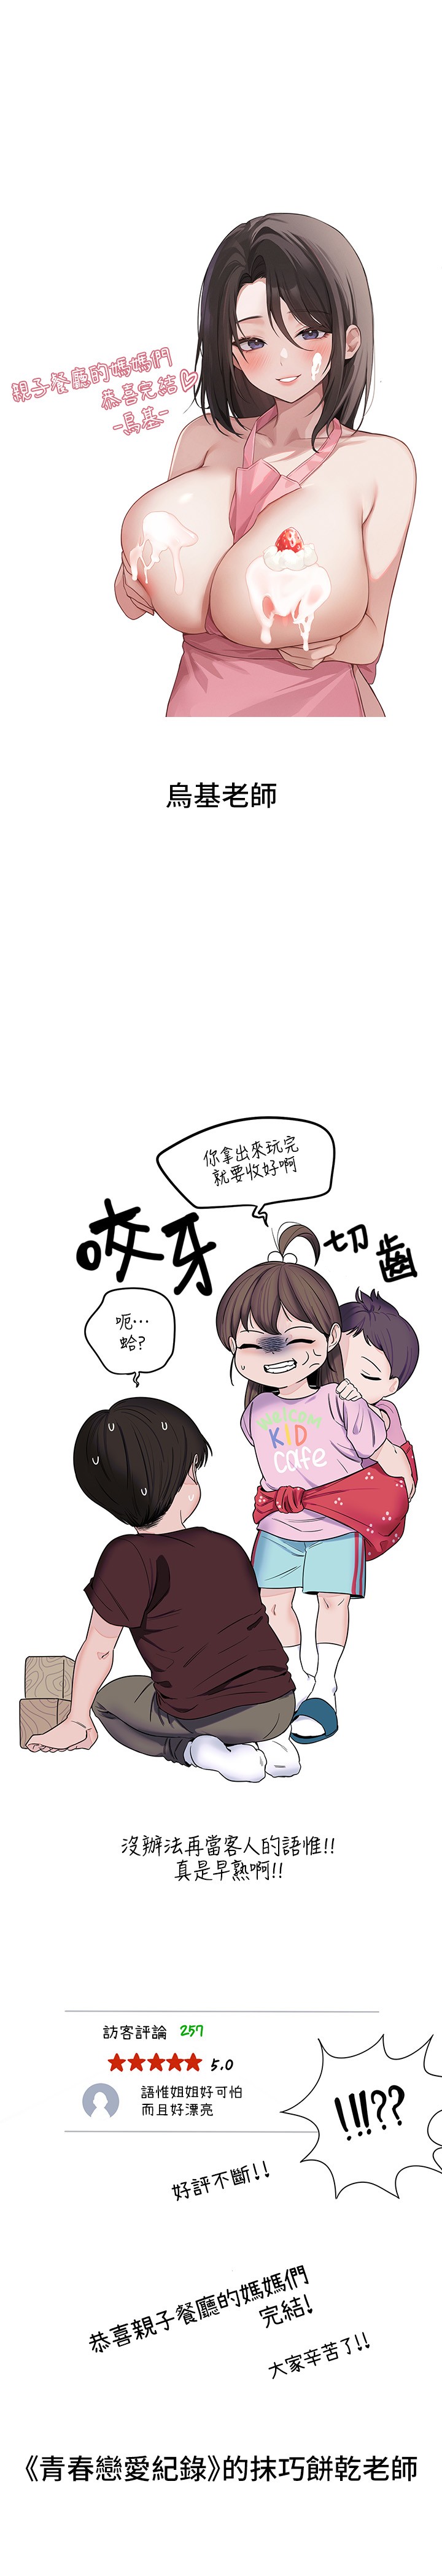 韩国漫画亲子餐厅的妈妈们韩漫_亲子餐厅的妈妈们-后记在线免费阅读-韩国漫画-第16张图片